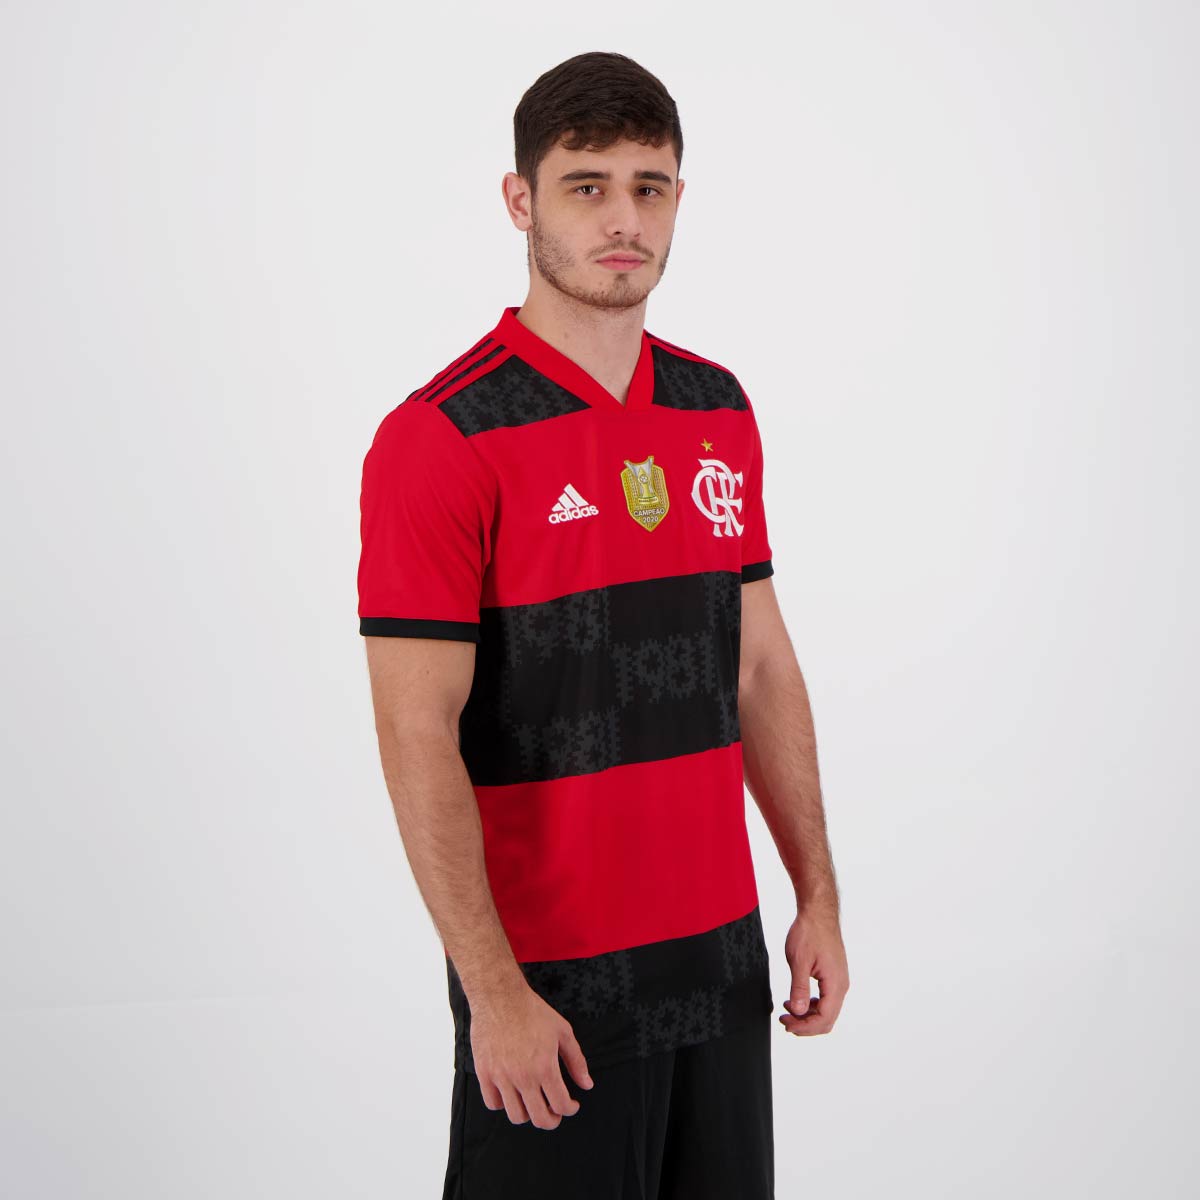 vesícula biliar Desfavorable engañar Adidas Flamengo 2021 Home 2020 Brazilian Champion Jersey - FutFanatics